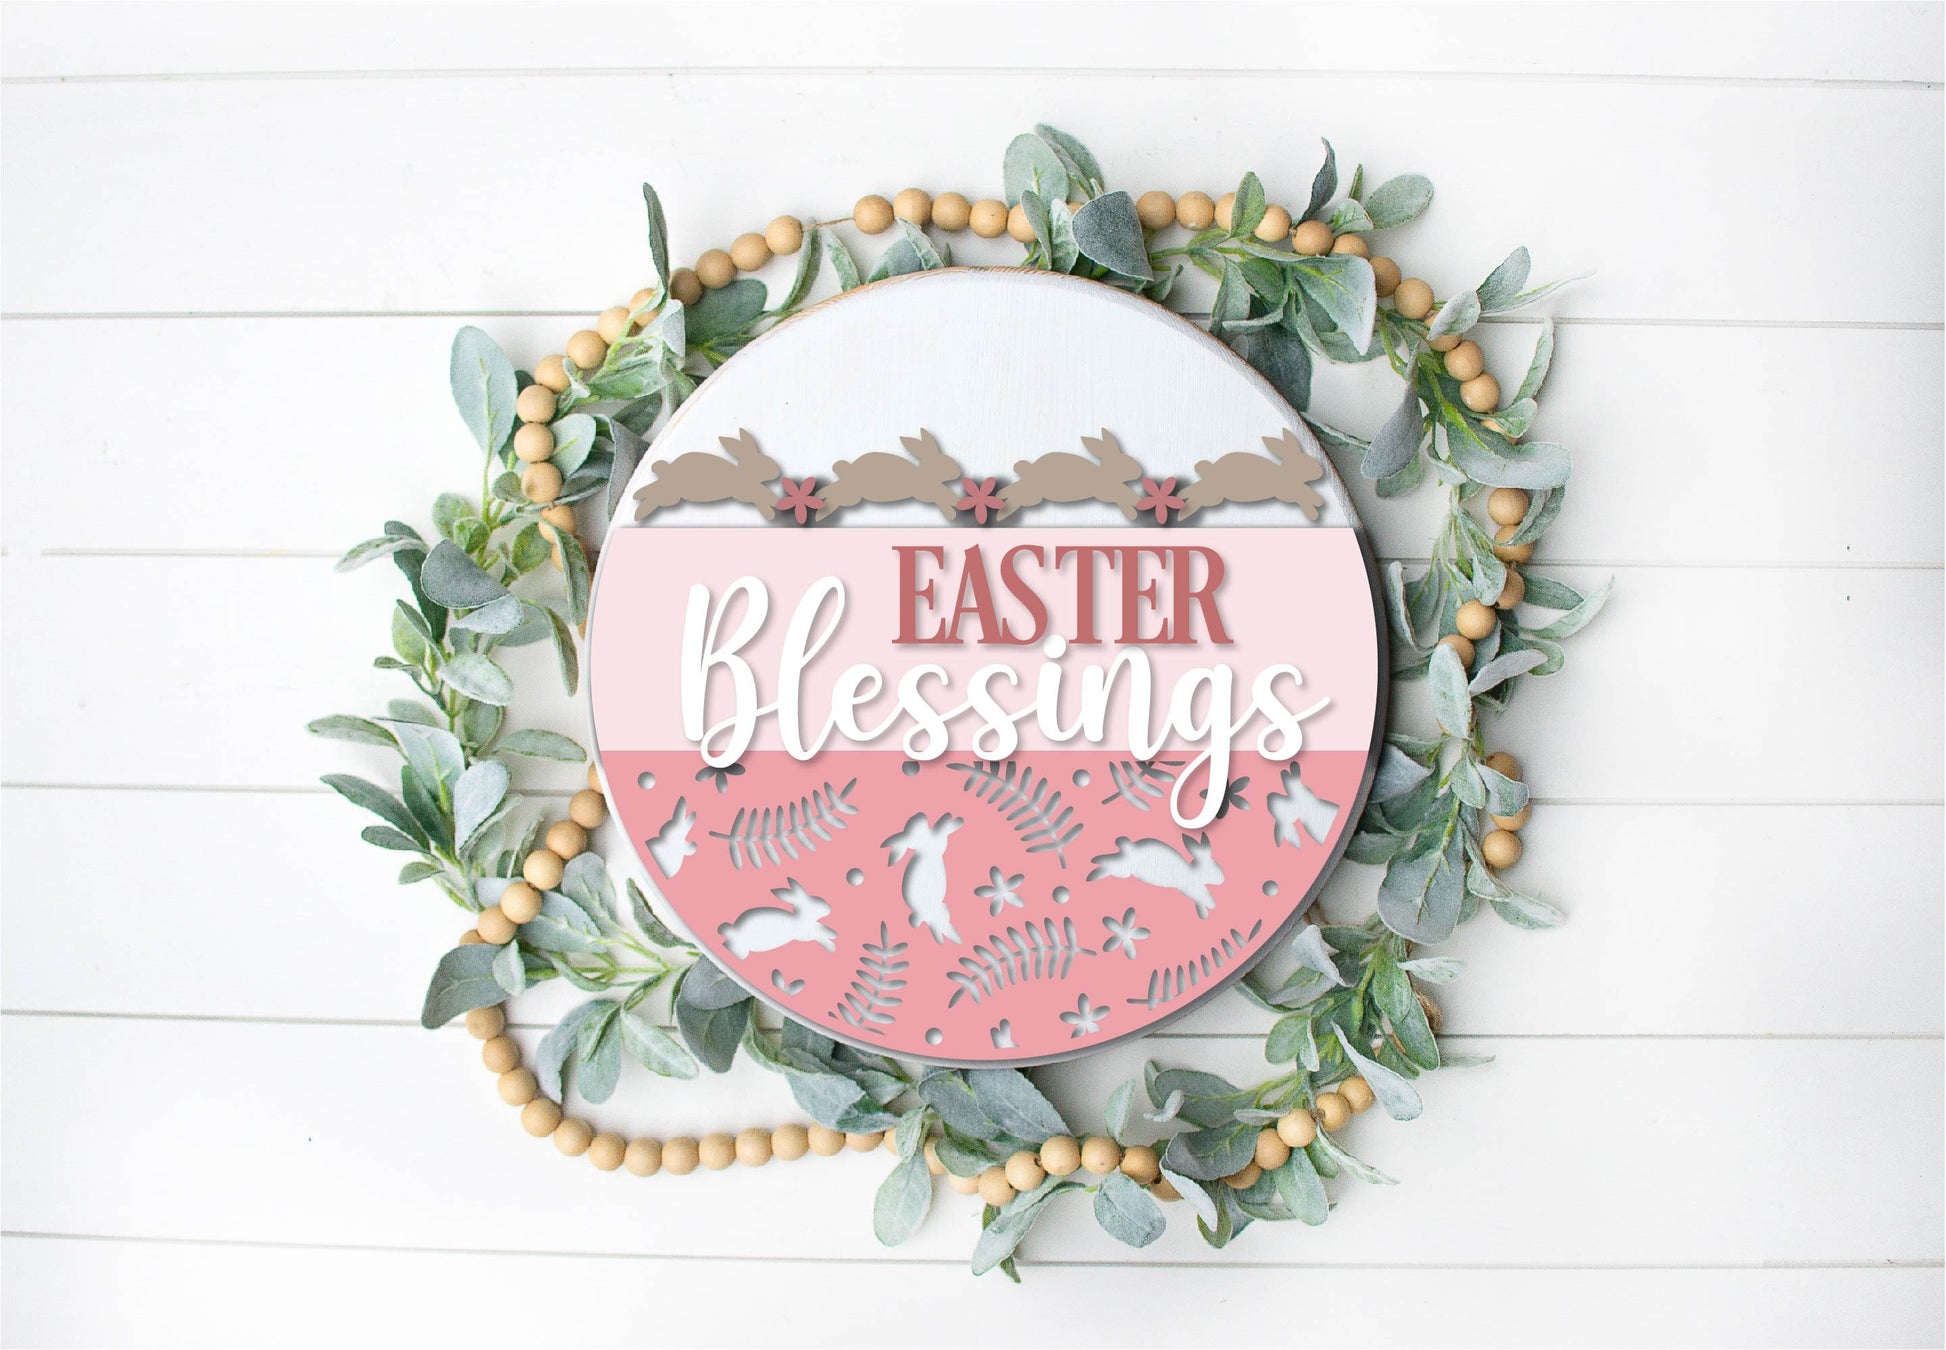 Easter Welcome door hanger, Easter blessings SVG, Easter bunny sign, spring floral svg, Farmhouse Easter decor, Glowforge svg, laser file